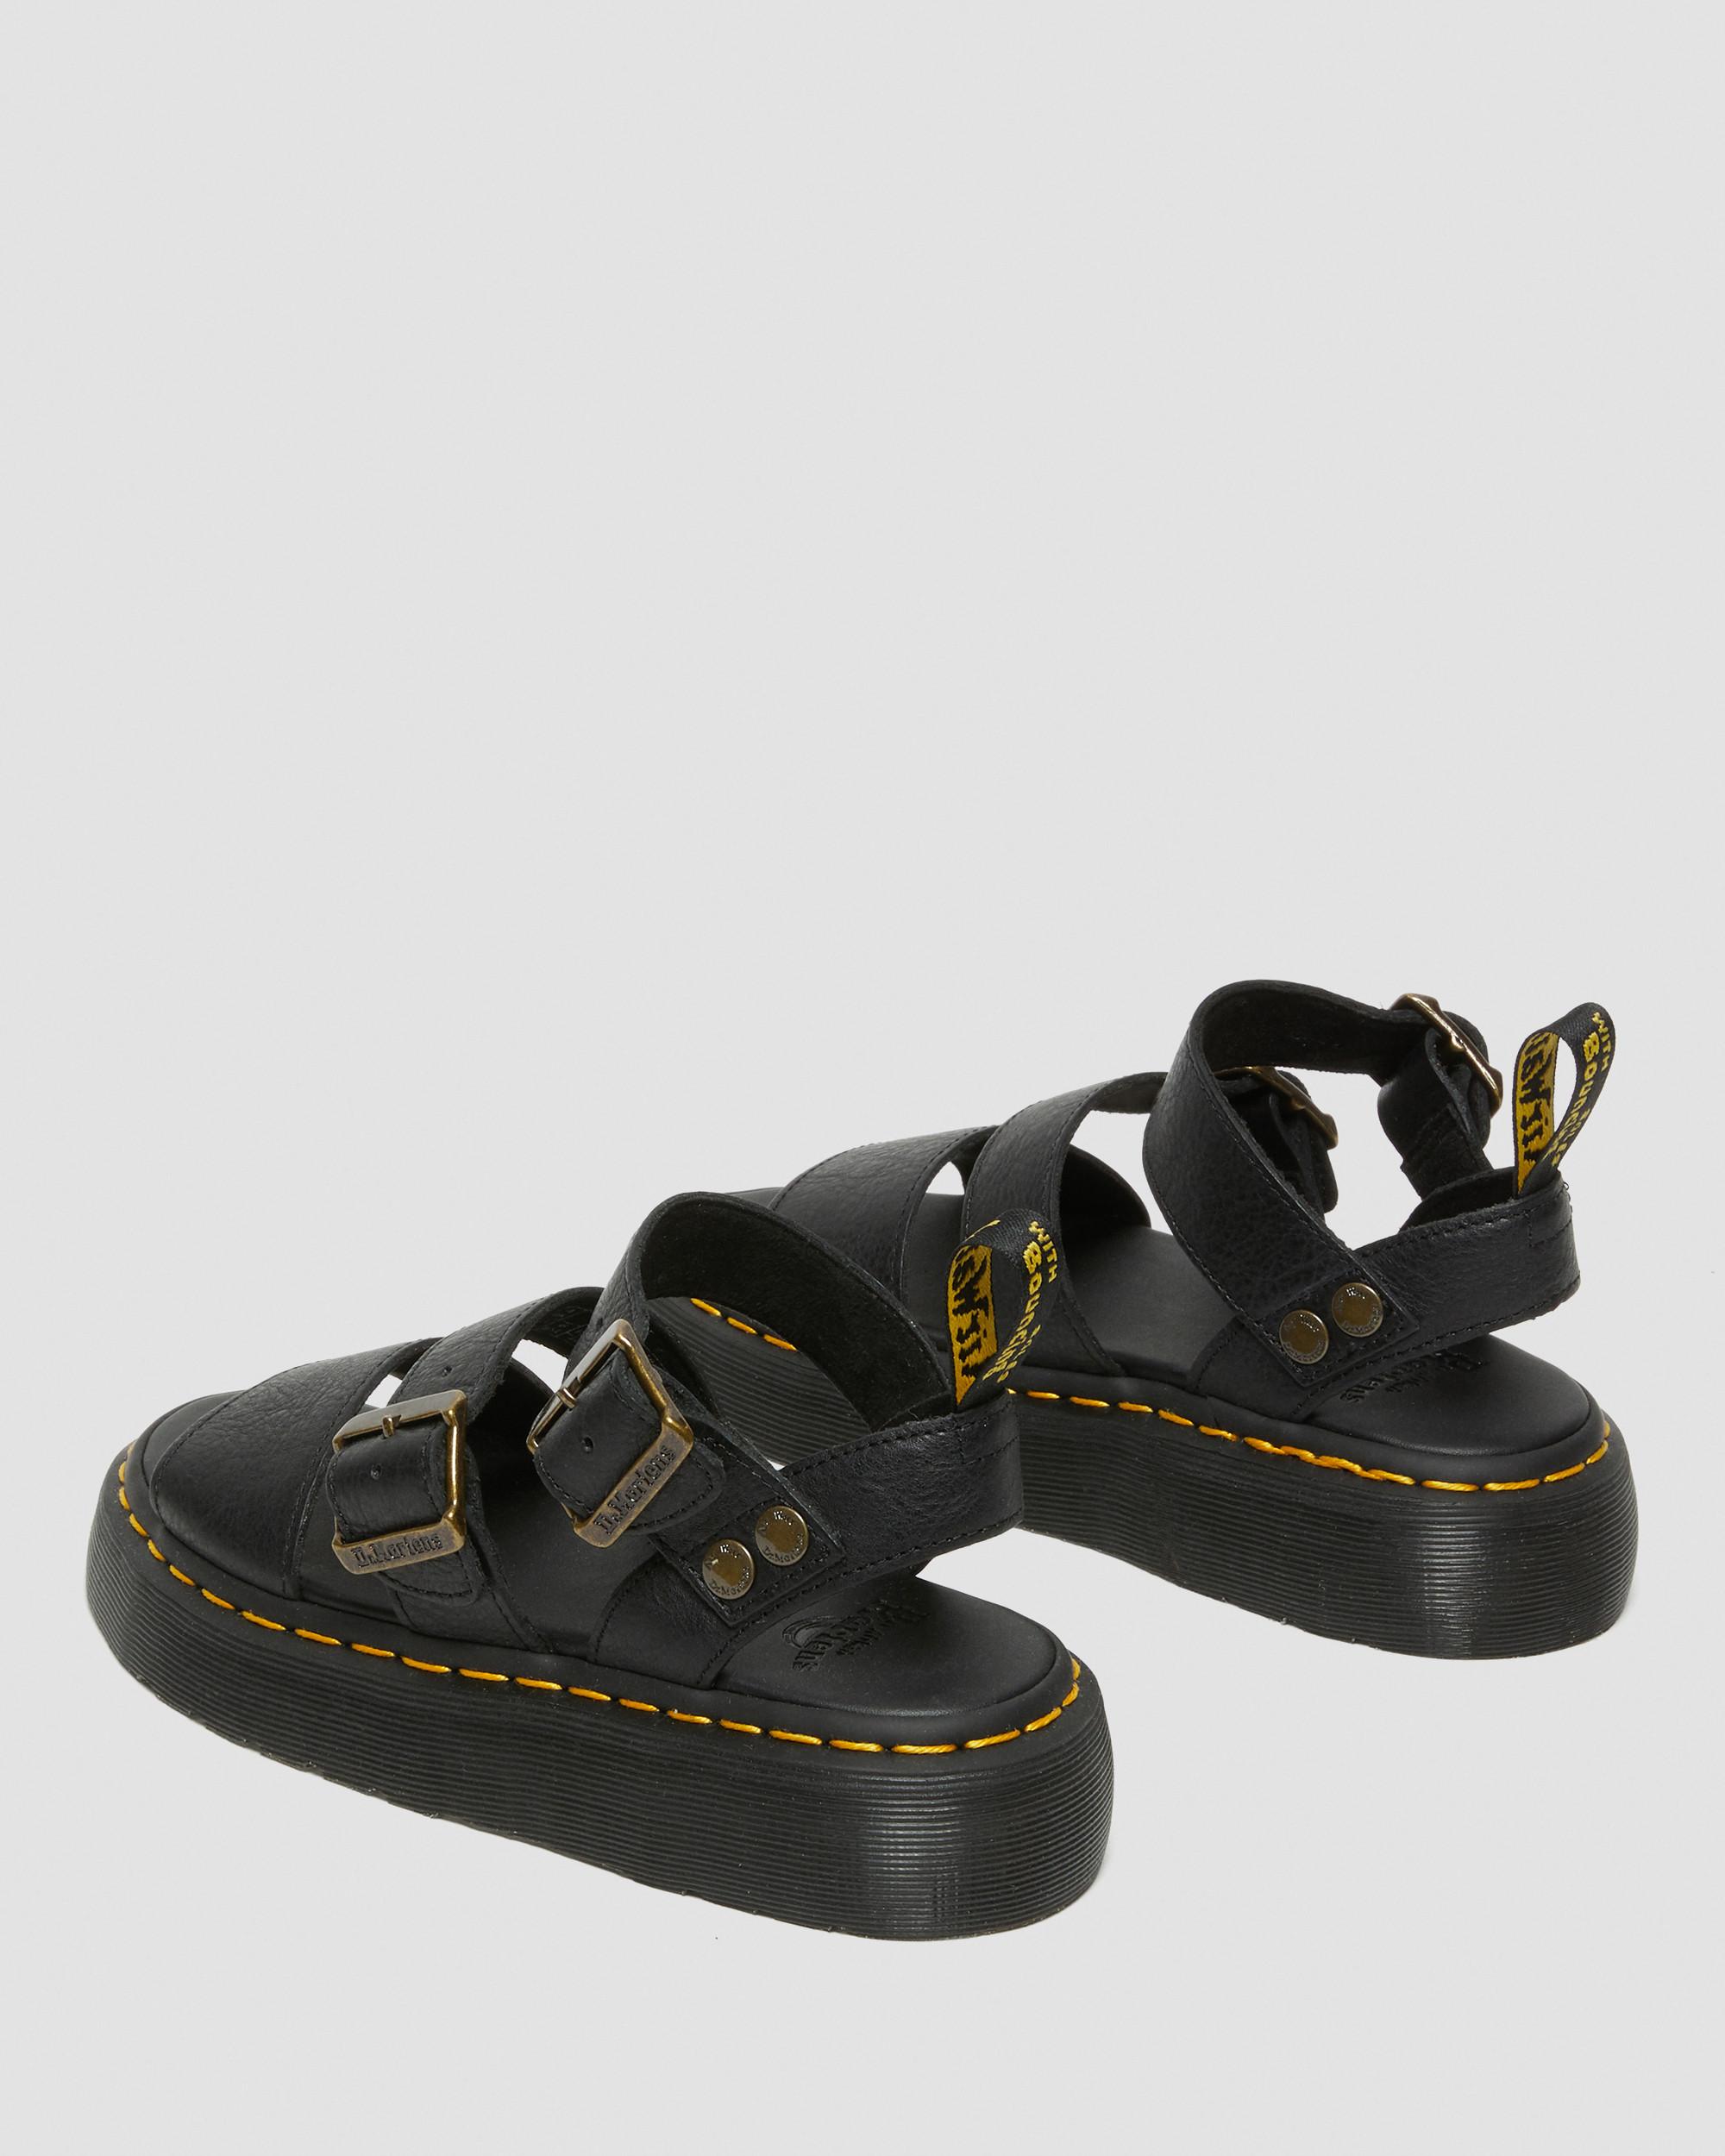 Gryphon Quad Leather Platform Sandals in Black | Dr. Martens